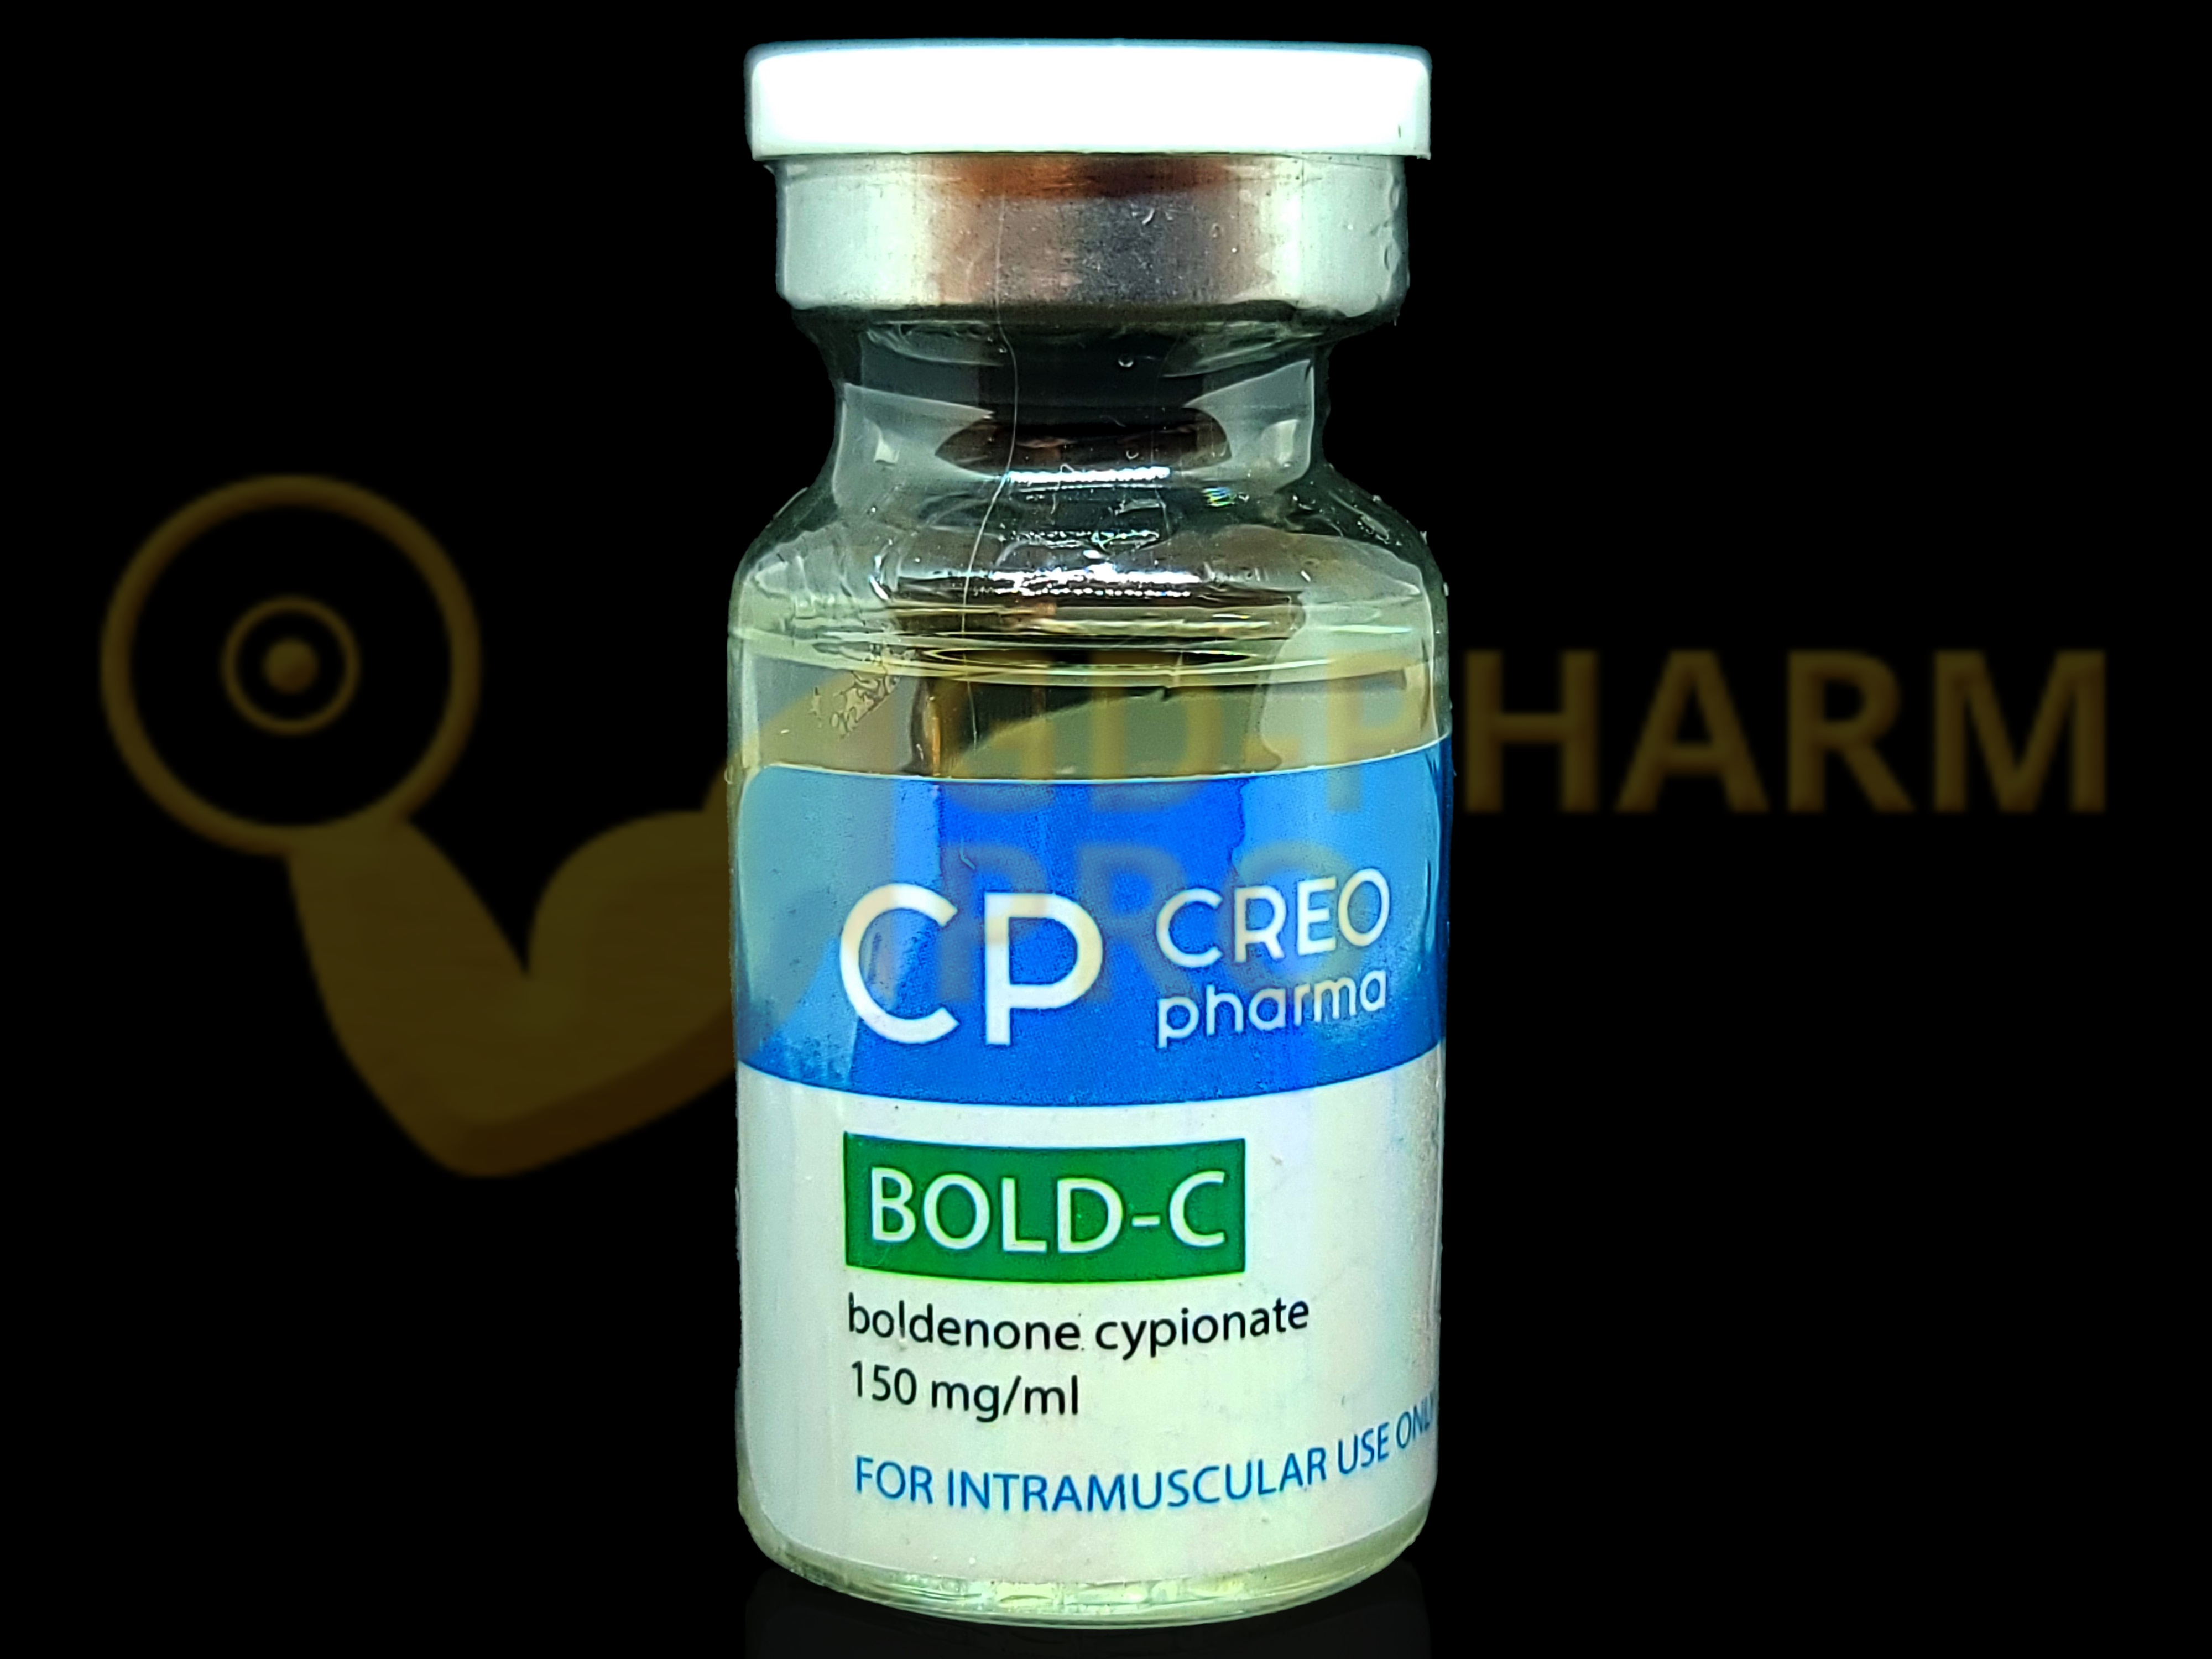 Bold-C Creo Pharma